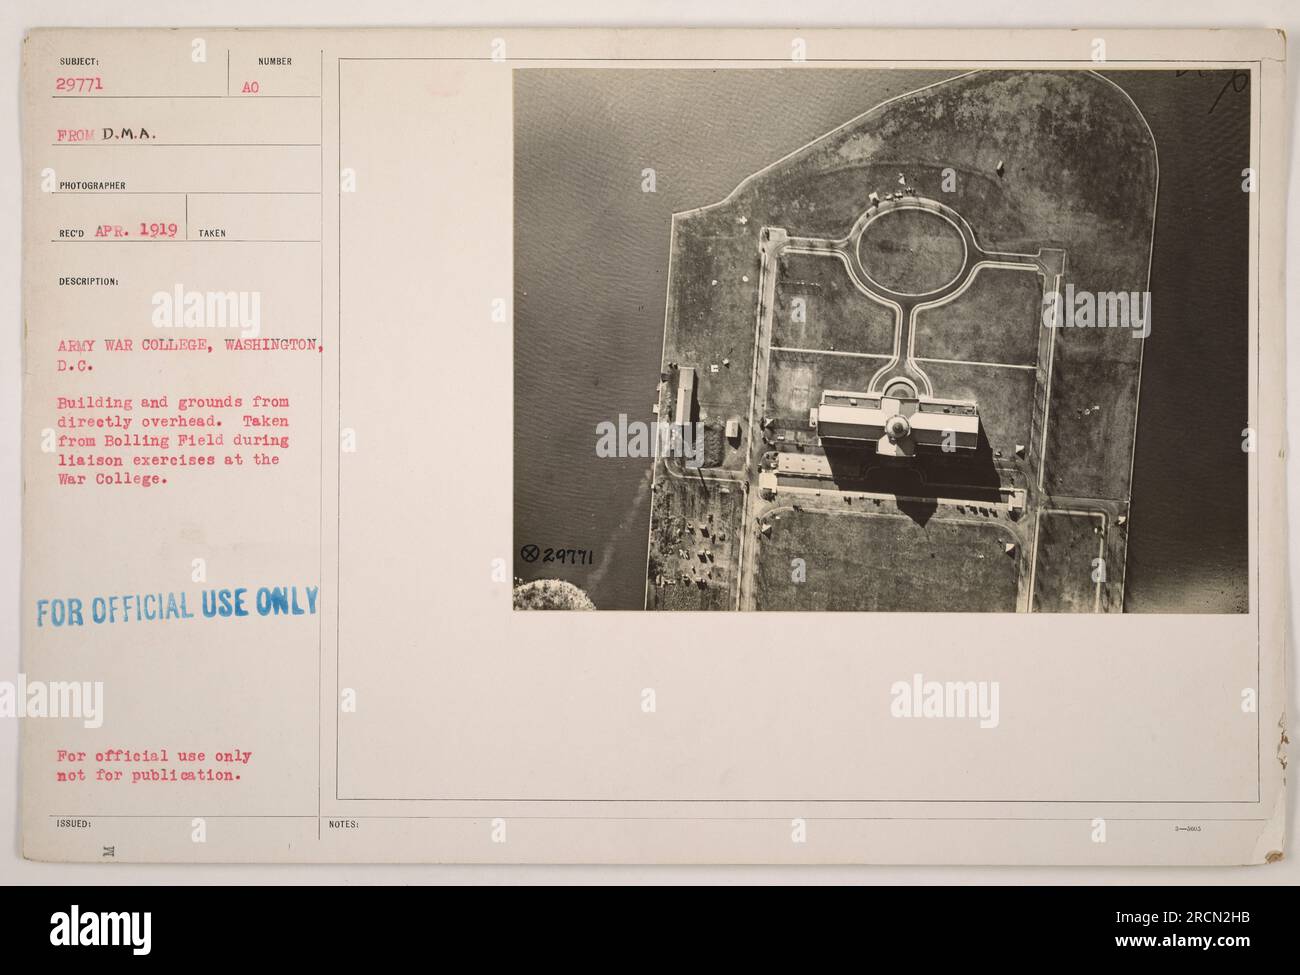 Vue aérienne du bâtiment et des terrains de l'Army War College à Washington, D.C. pendant les exercices de liaison. Photographie prise à Bolling Field. Cette photo a été prise en avril 1919 et est réservée à un usage officiel seulement, et non à la publication. Banque D'Images